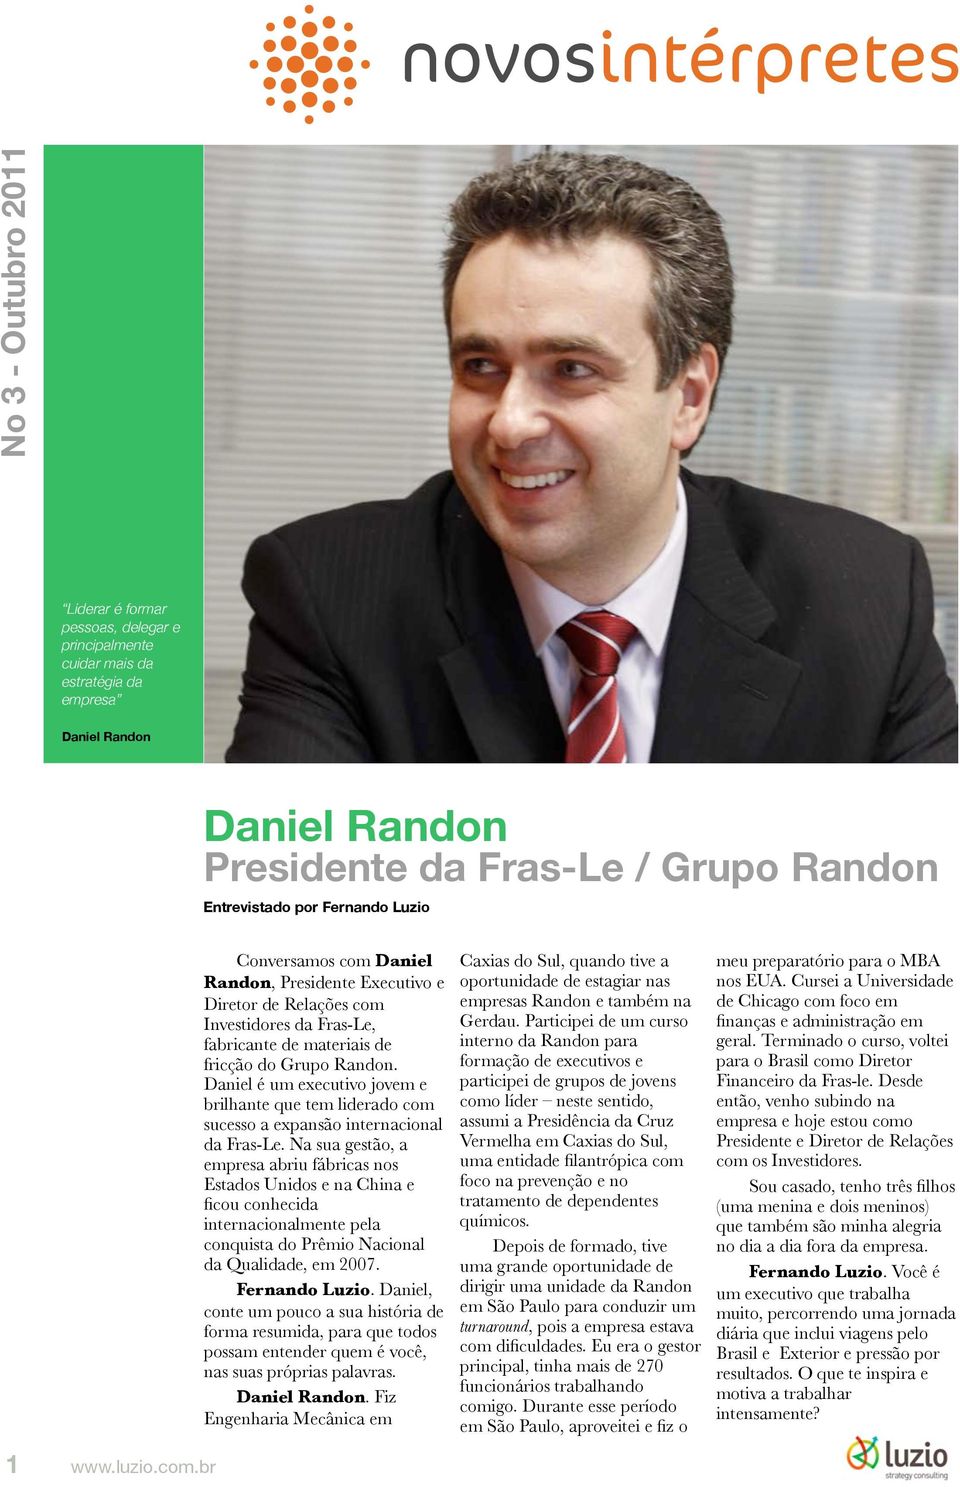 Daniel é um executivo jovem e brilhante que tem liderado com sucesso a expansão internacional da Fras-Le.